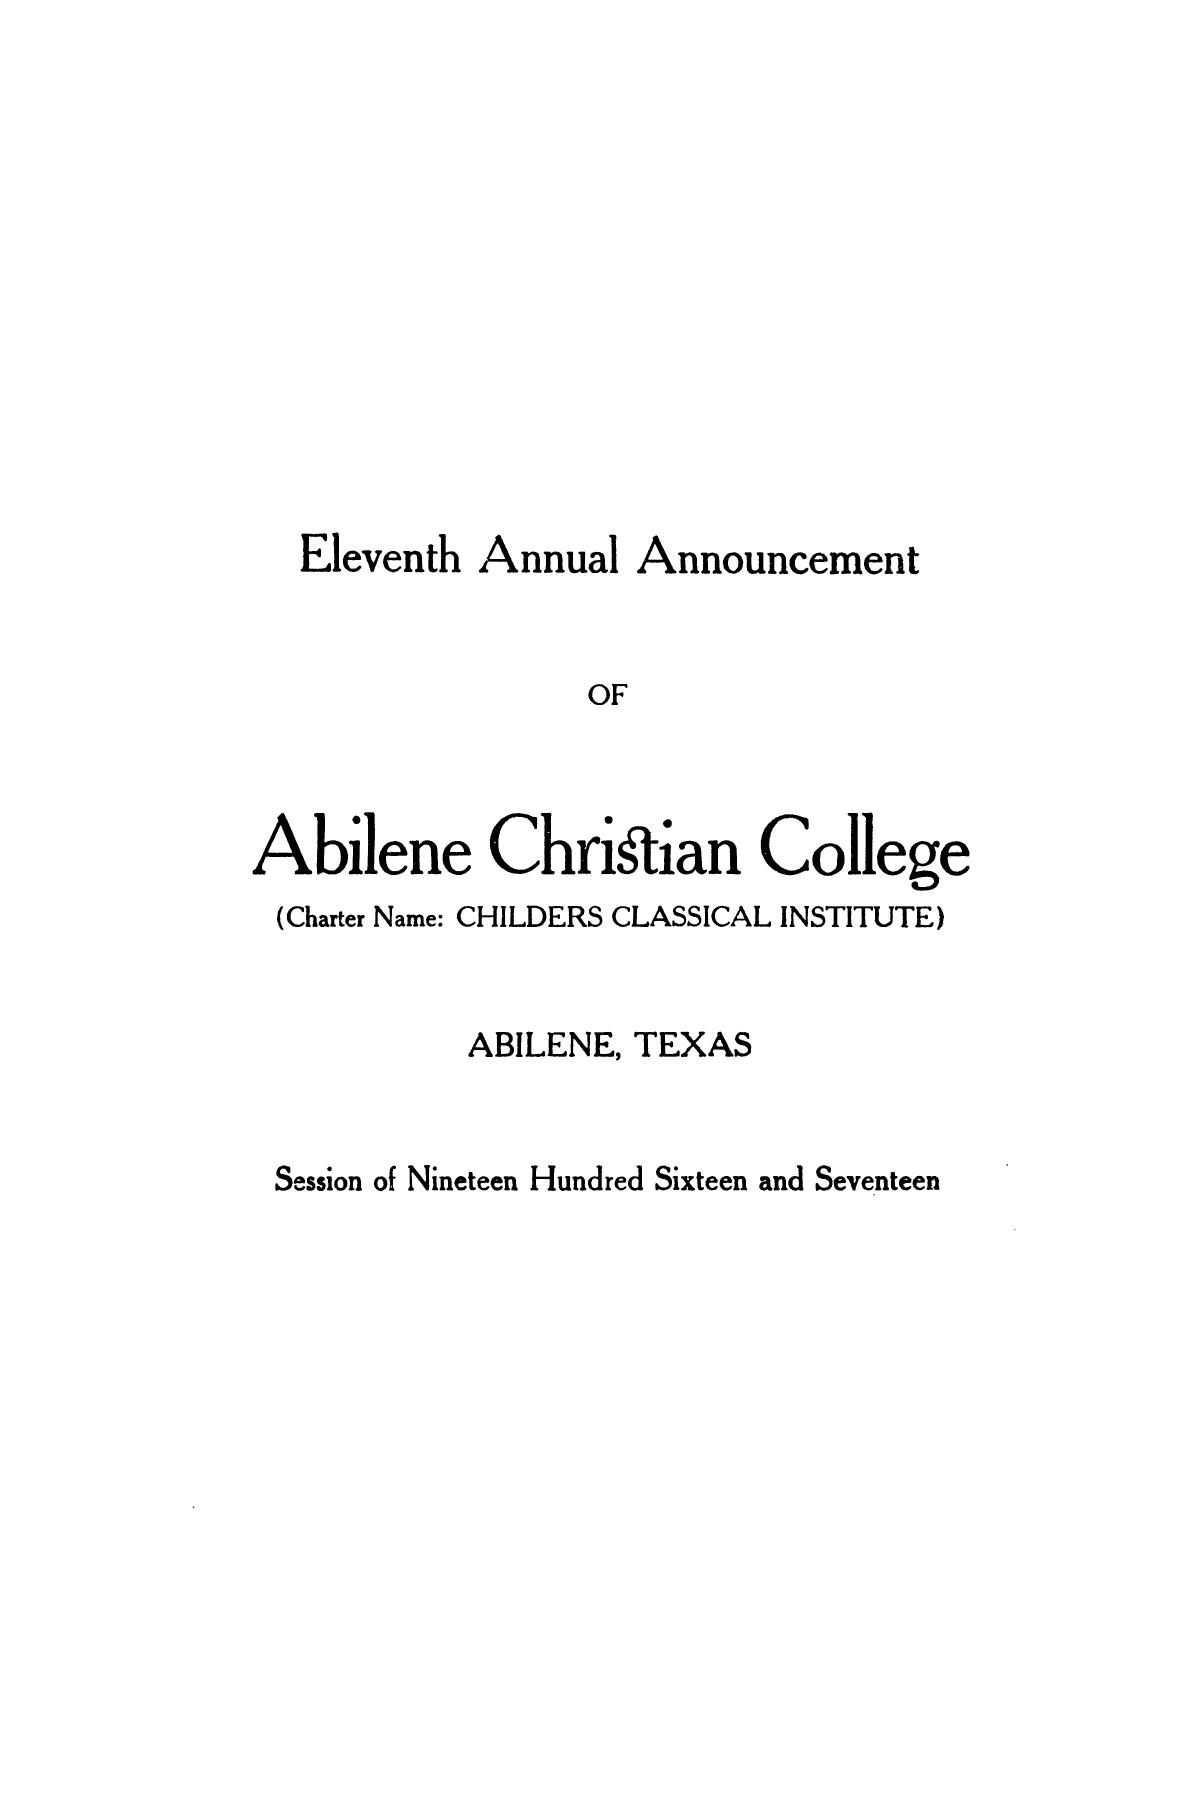 Catalog of Abilene Christian College, 1916-1917
                                                
                                                    1
                                                